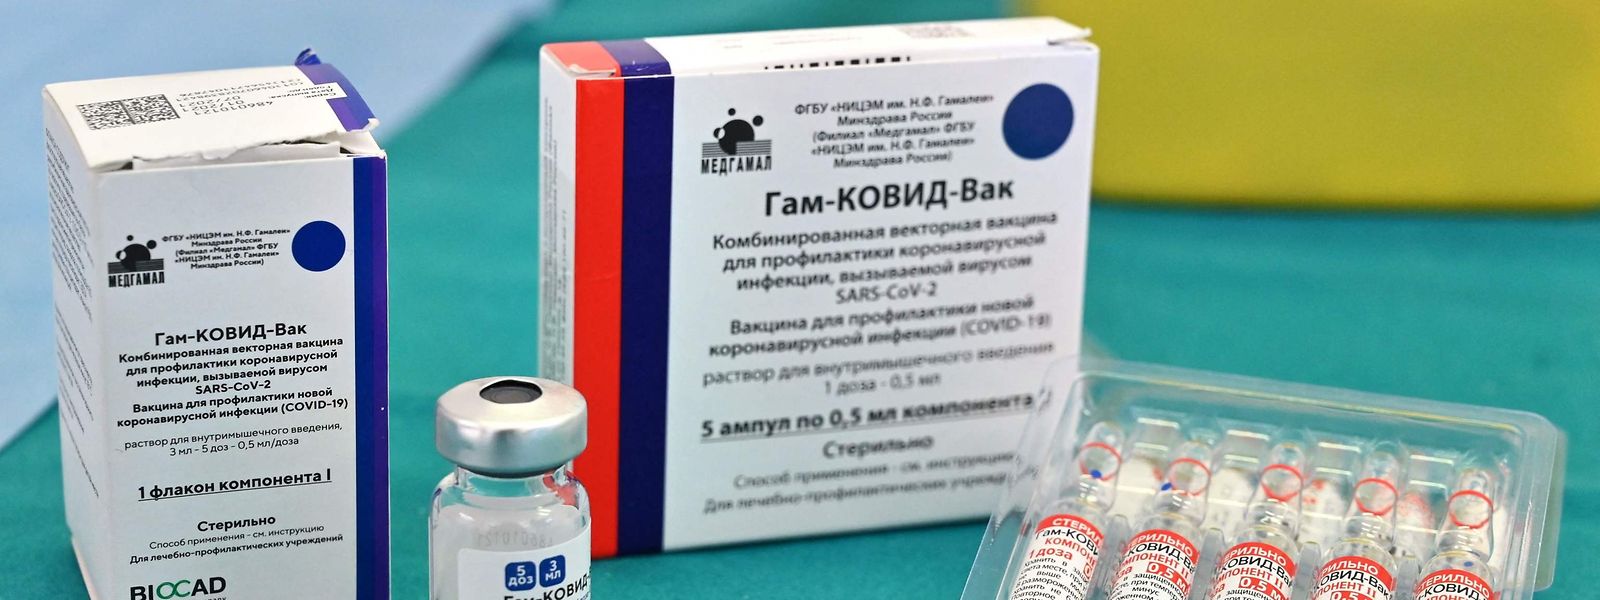 Eine Zulassung für den russischen Impfstoff durch die Europäische Arzneimittel-Agentur steht noch aus.